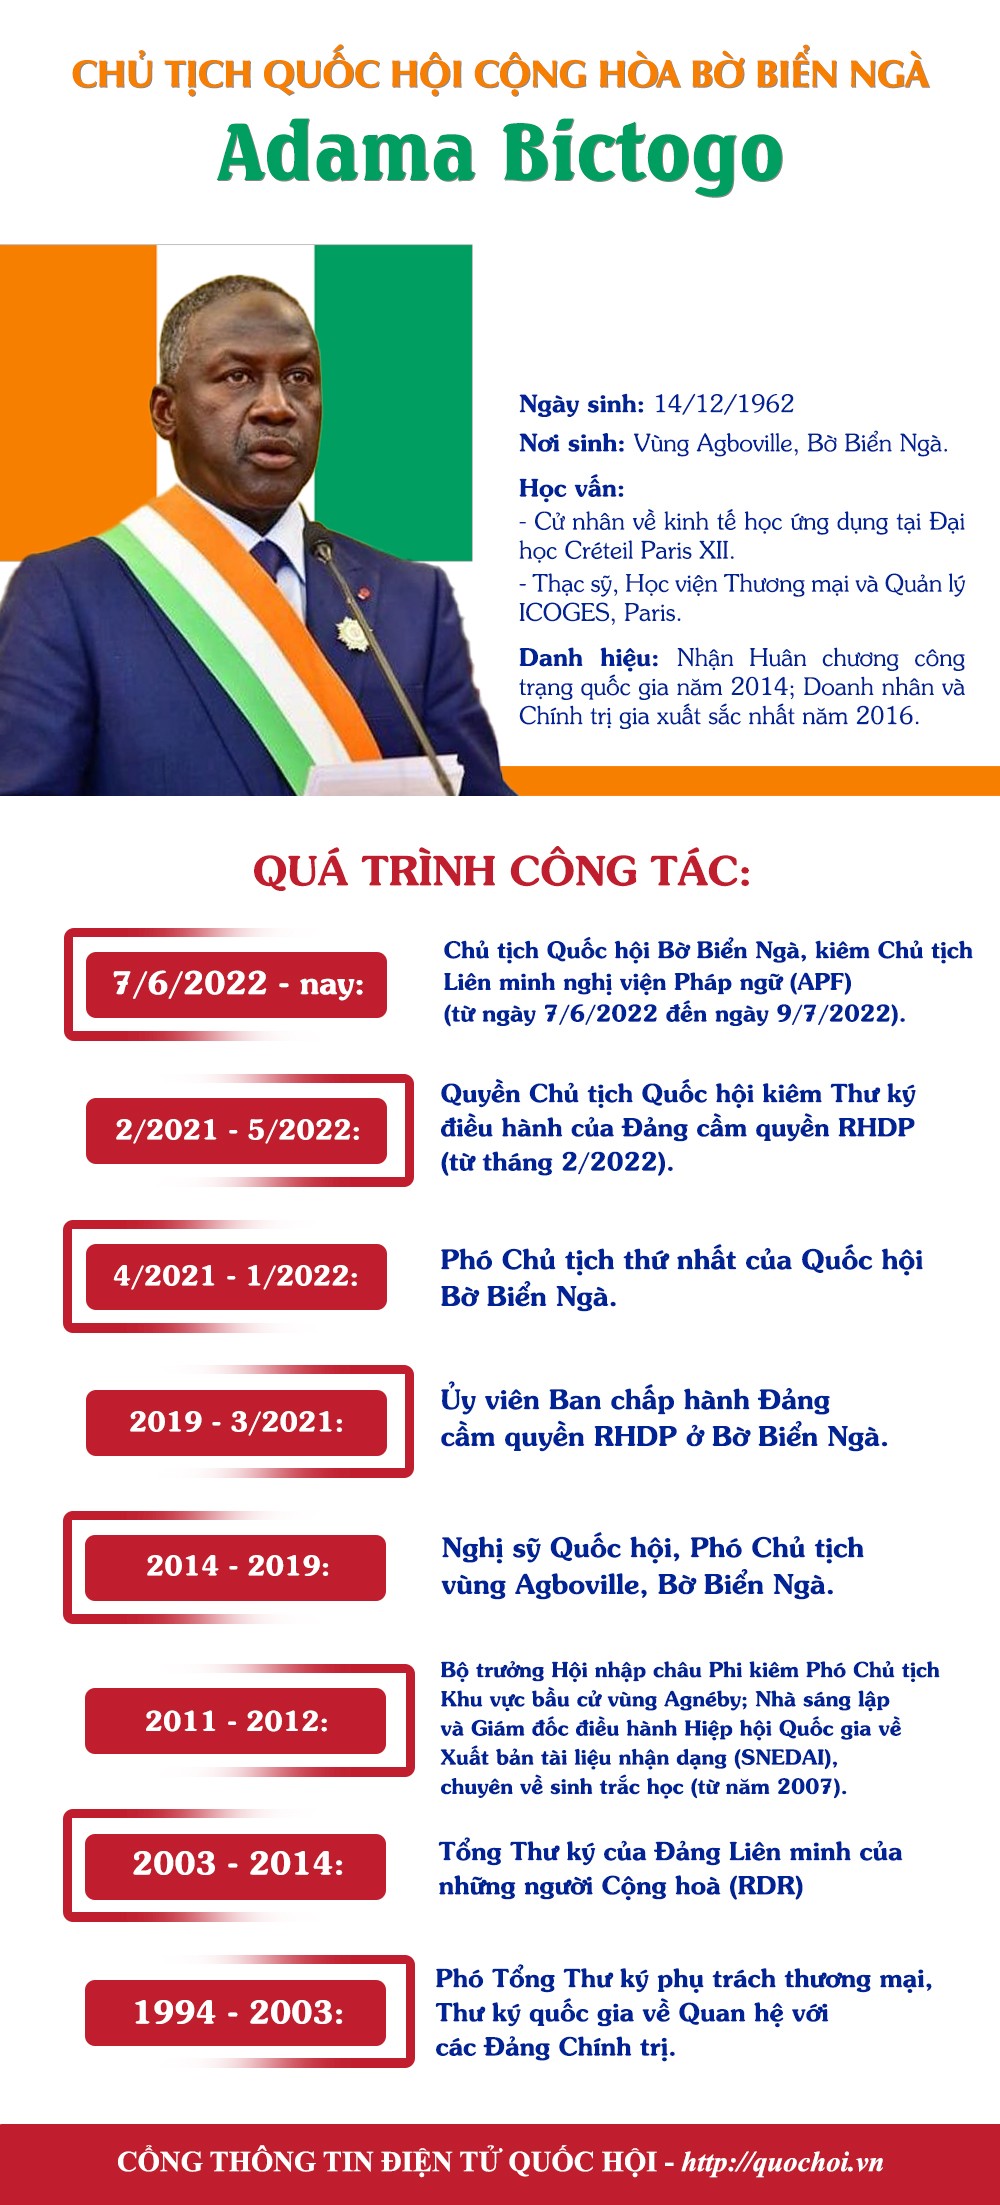 Chủ tịch Quốc hội Cộng hòa Bờ Biển Ngà sẽ thăm chính thức Việt Nam